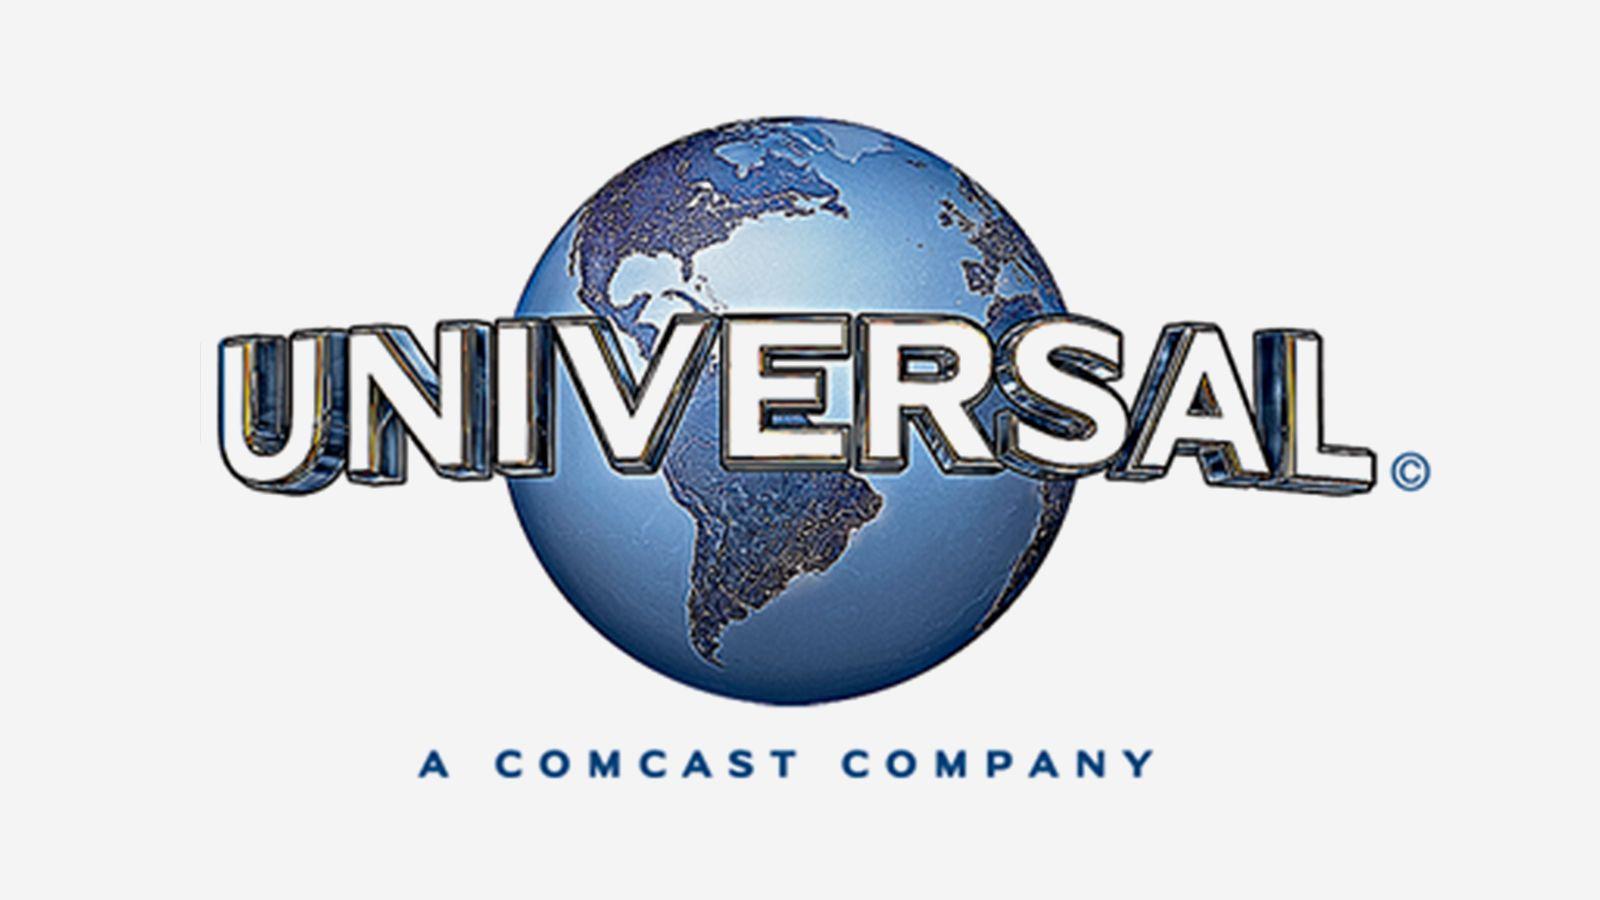 Universal 2017 Logo - More Logos